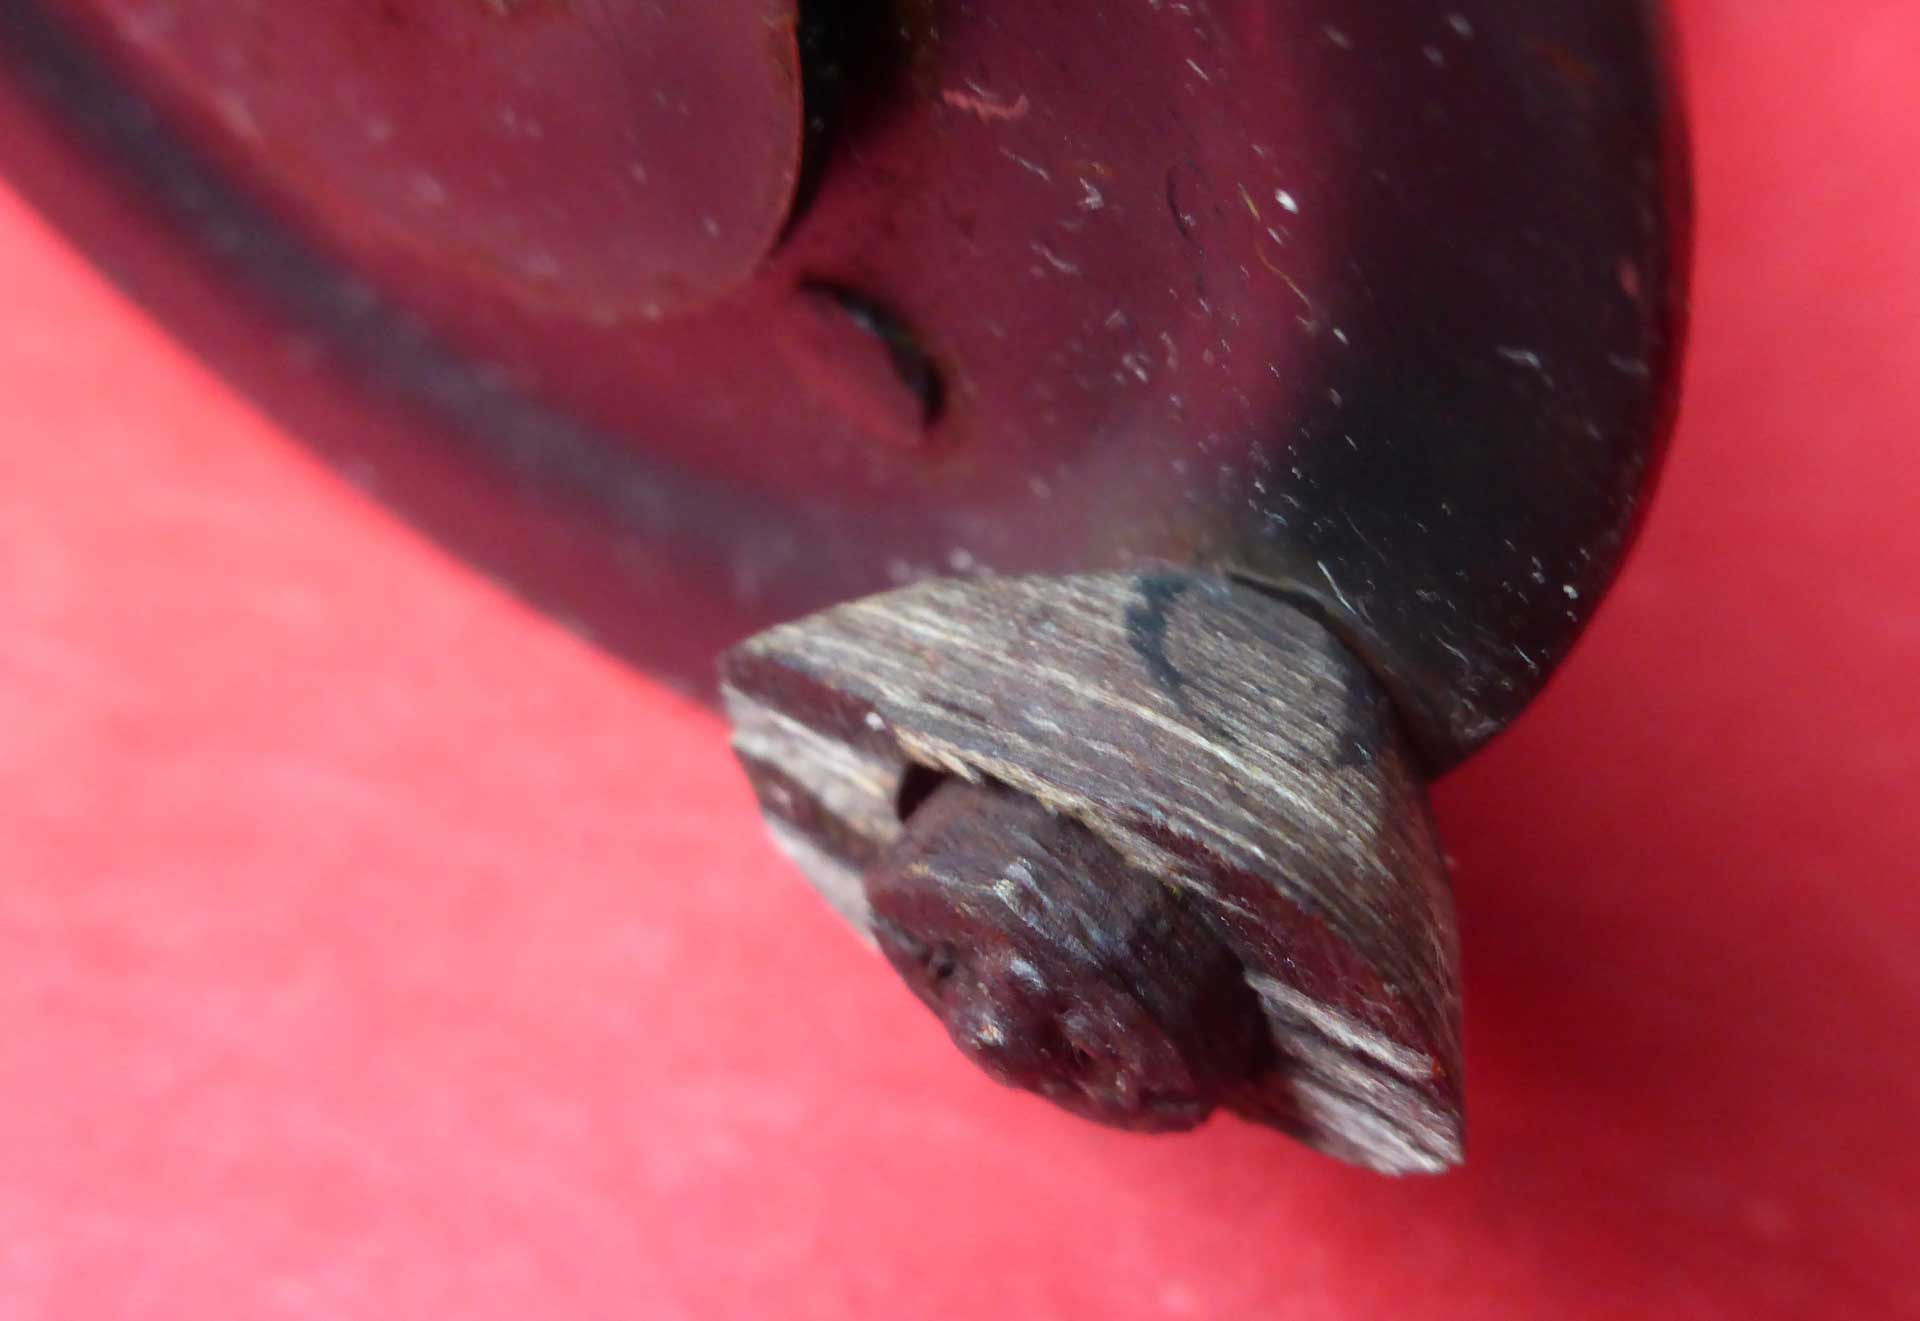 Der abgebrochene Griff besteht aus Lignofol, einem Kunstharz-Sperrholz-Mischmaterial, das in den 1930er Jahren erfunden wurde.